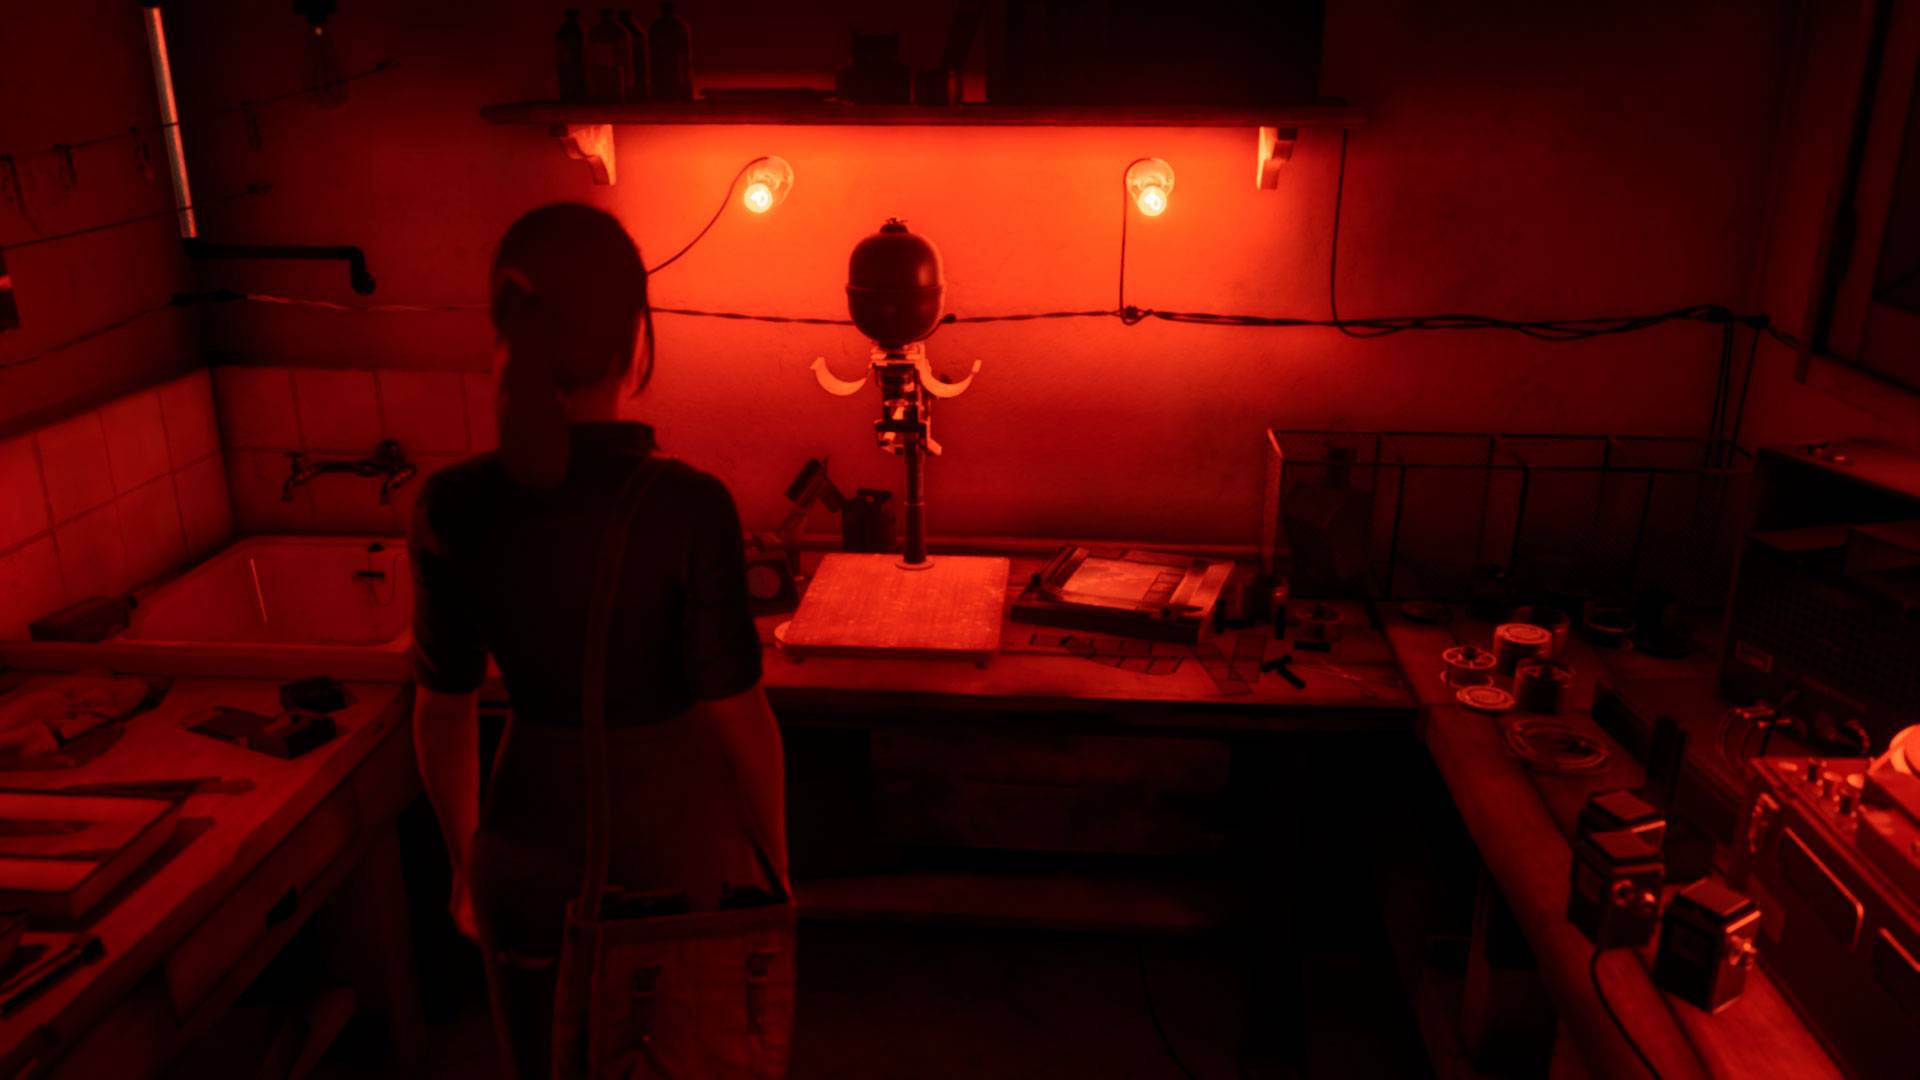 Una mujer joven con el pelo recogido se encuentra en una sala de fotografía con un equipo antiguo frente a ella, iluminado en rojo.